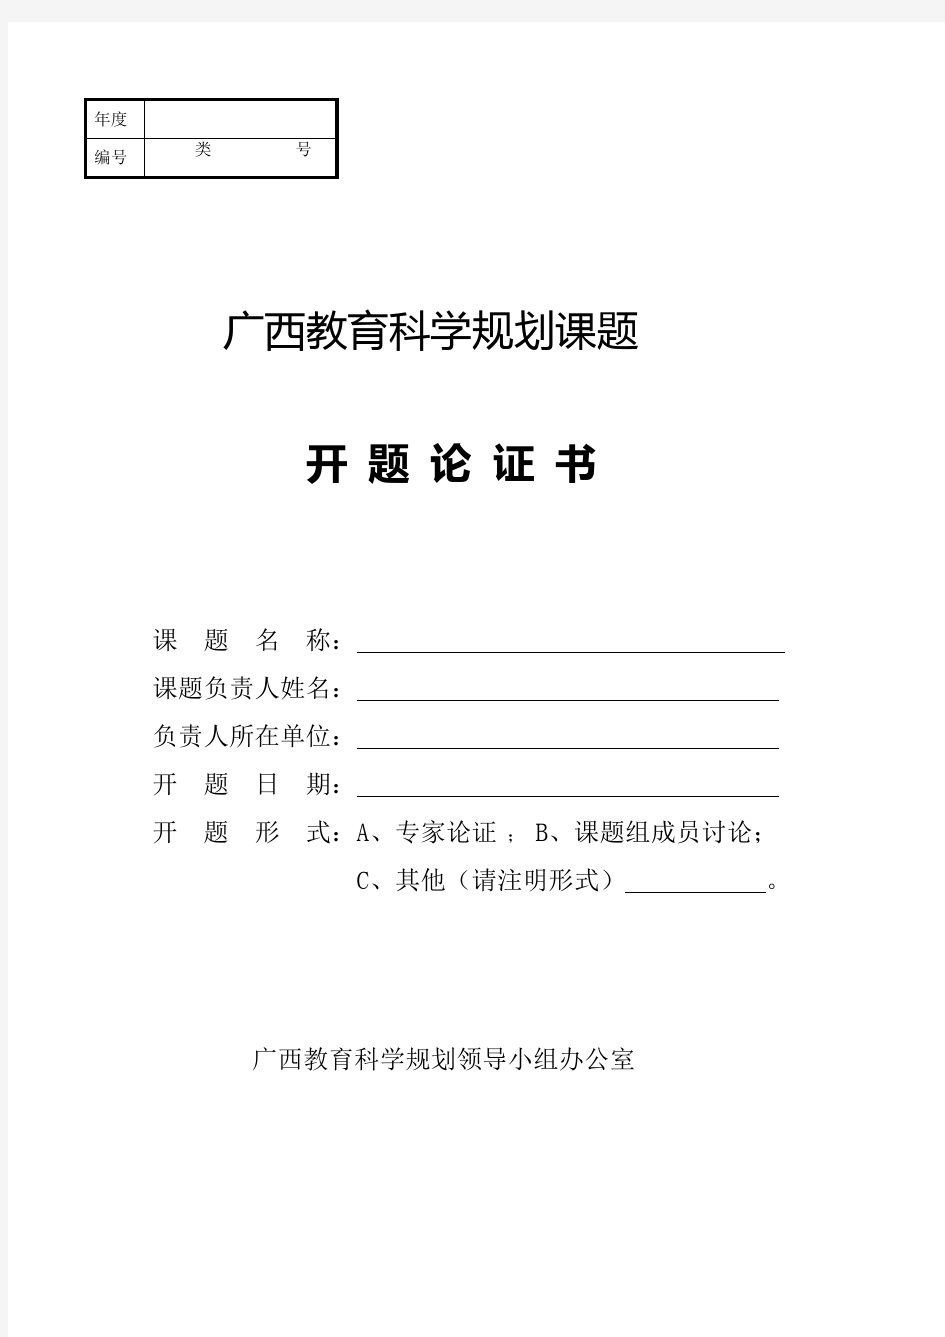 广西民族大学 广西教育科学规划课题开题报告 开题轮证书